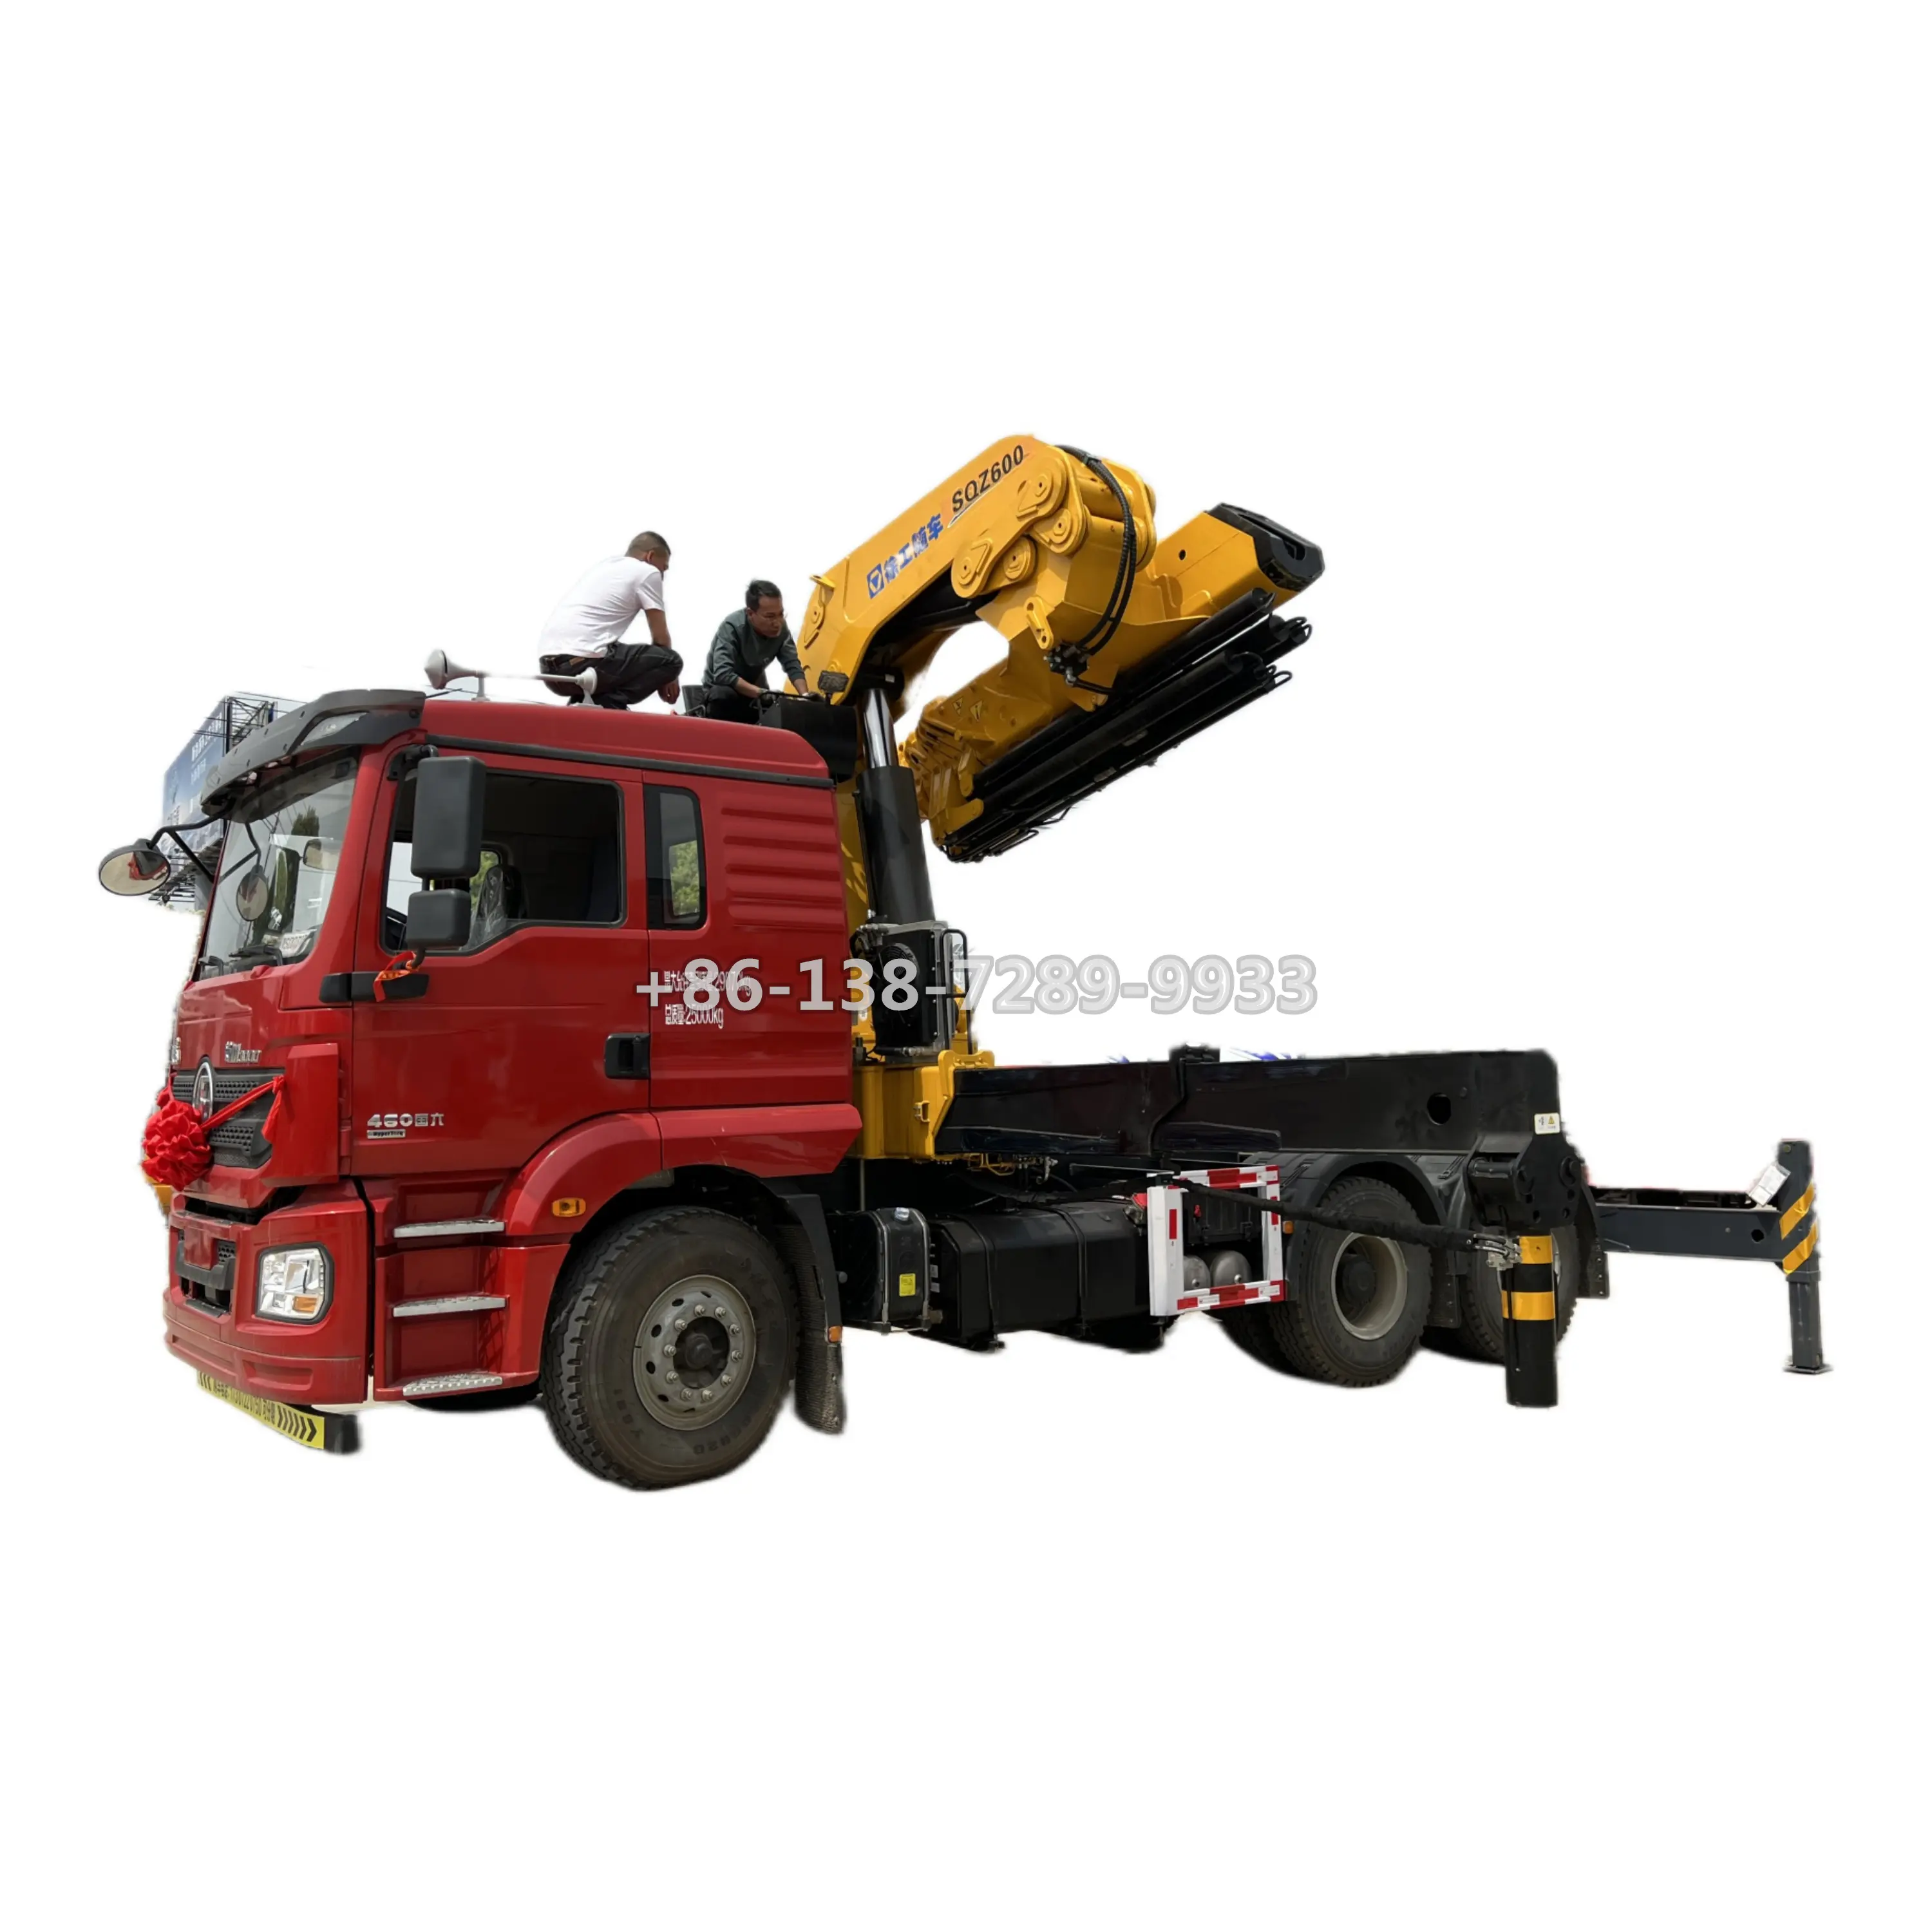 Shacman 38 toneladas 9 brazos hidráulico ATV madera registro remolque cargador grúa para accesorios de tractor